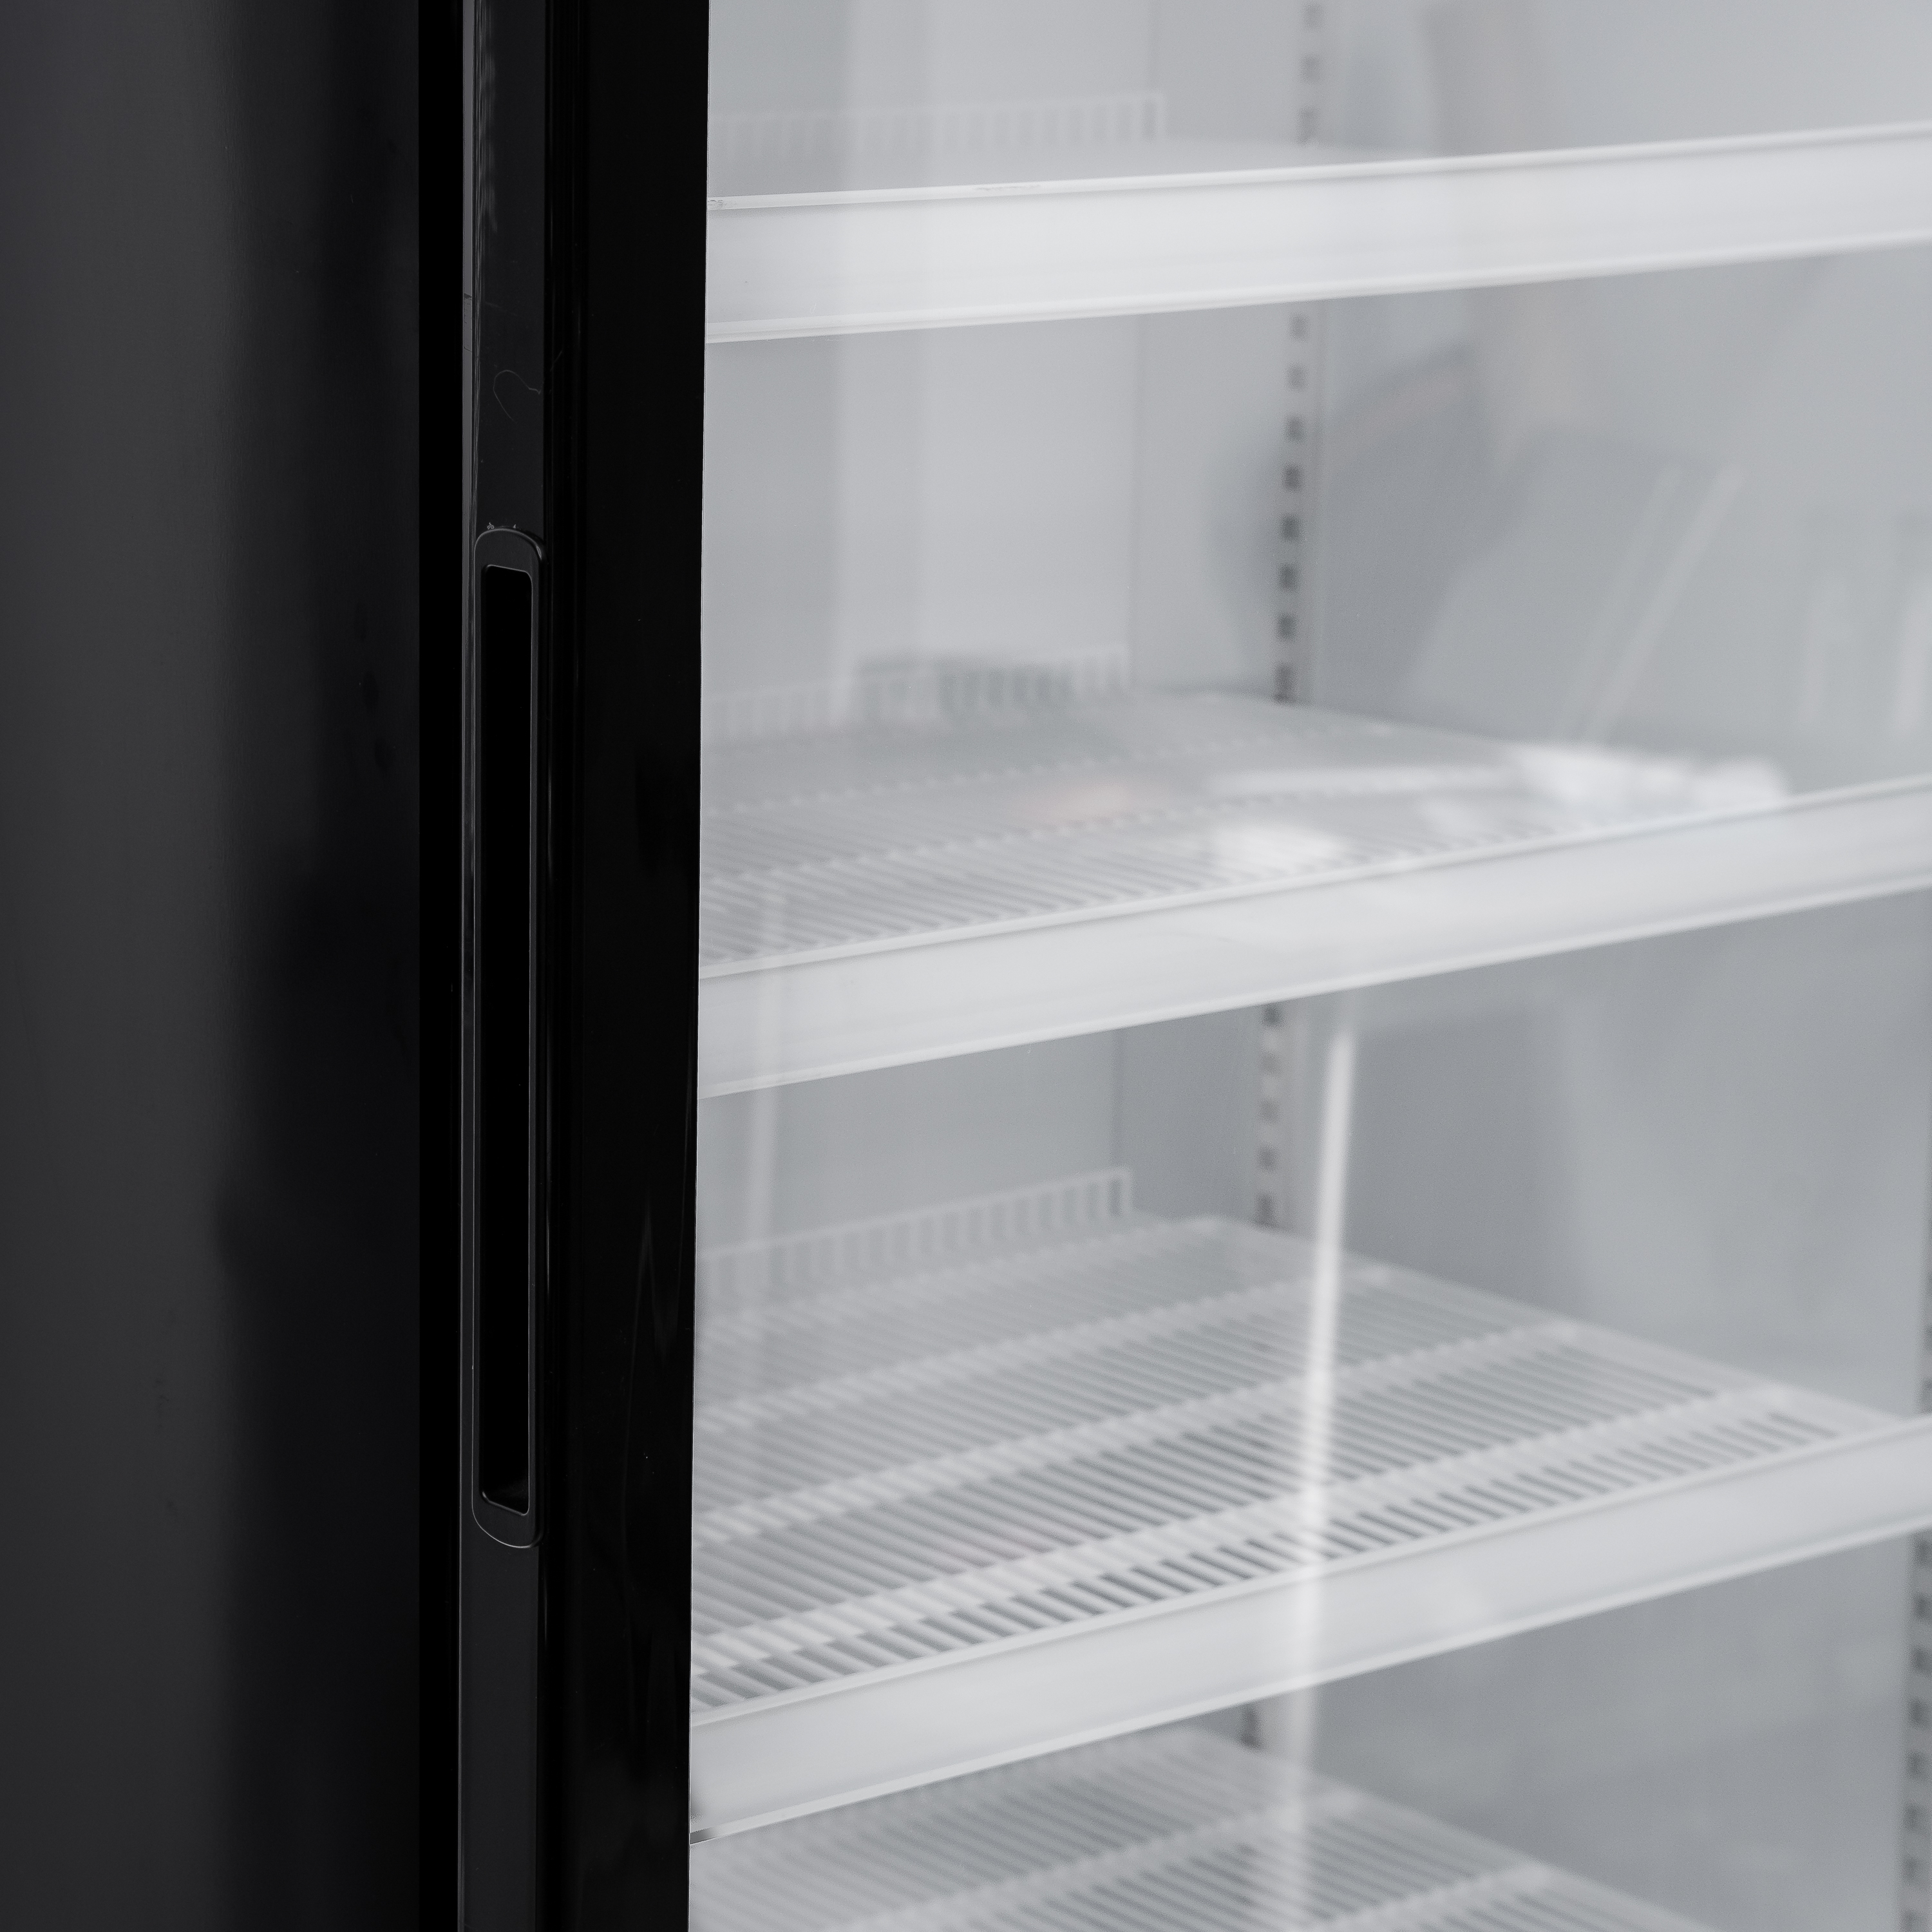 Морозильные витрины - Морозильный шкаф J LSC 548W(вертикальный холодильник)